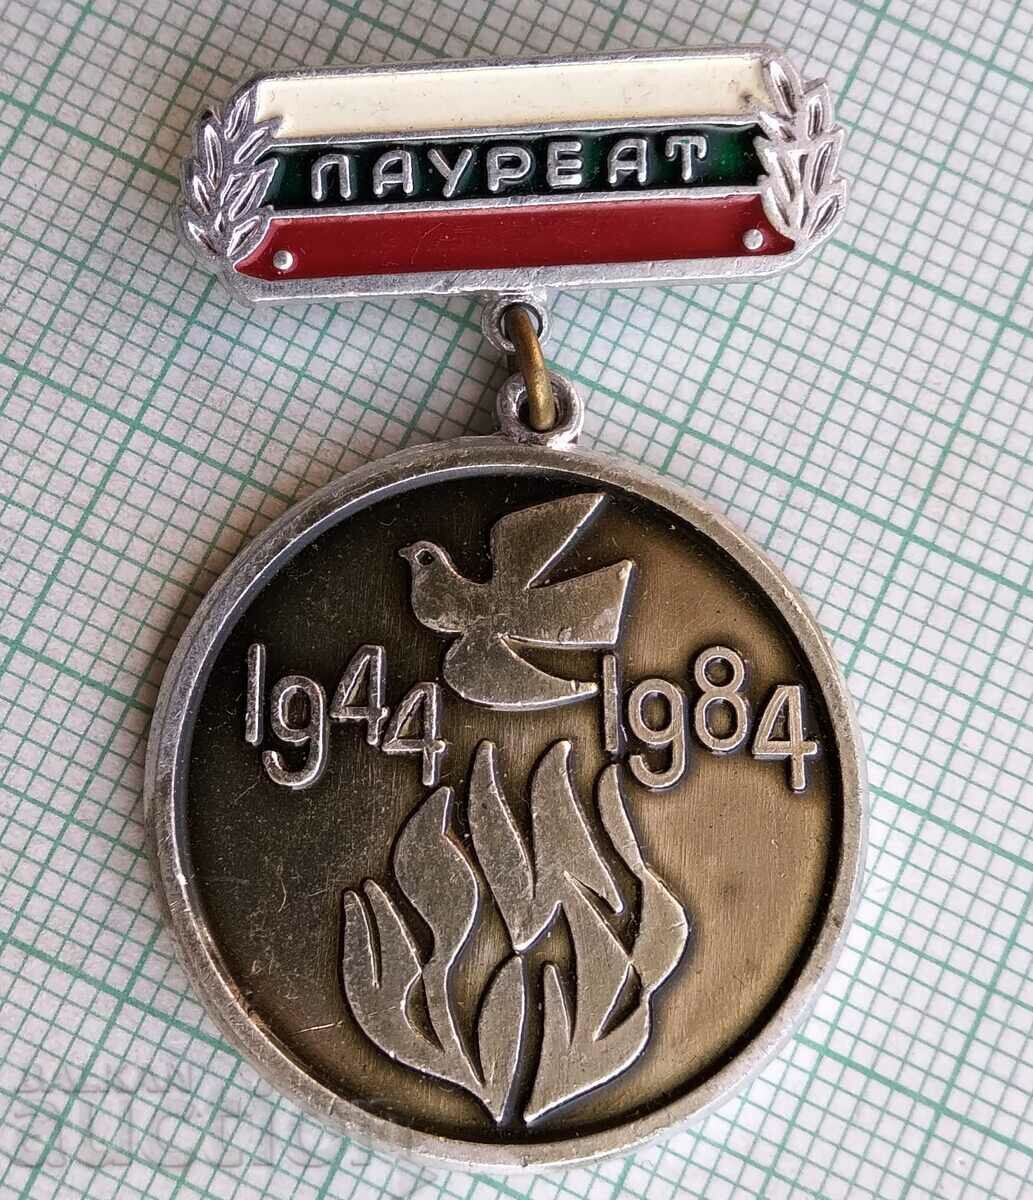 11545 Σήμα - Βραβείο 1944-1984